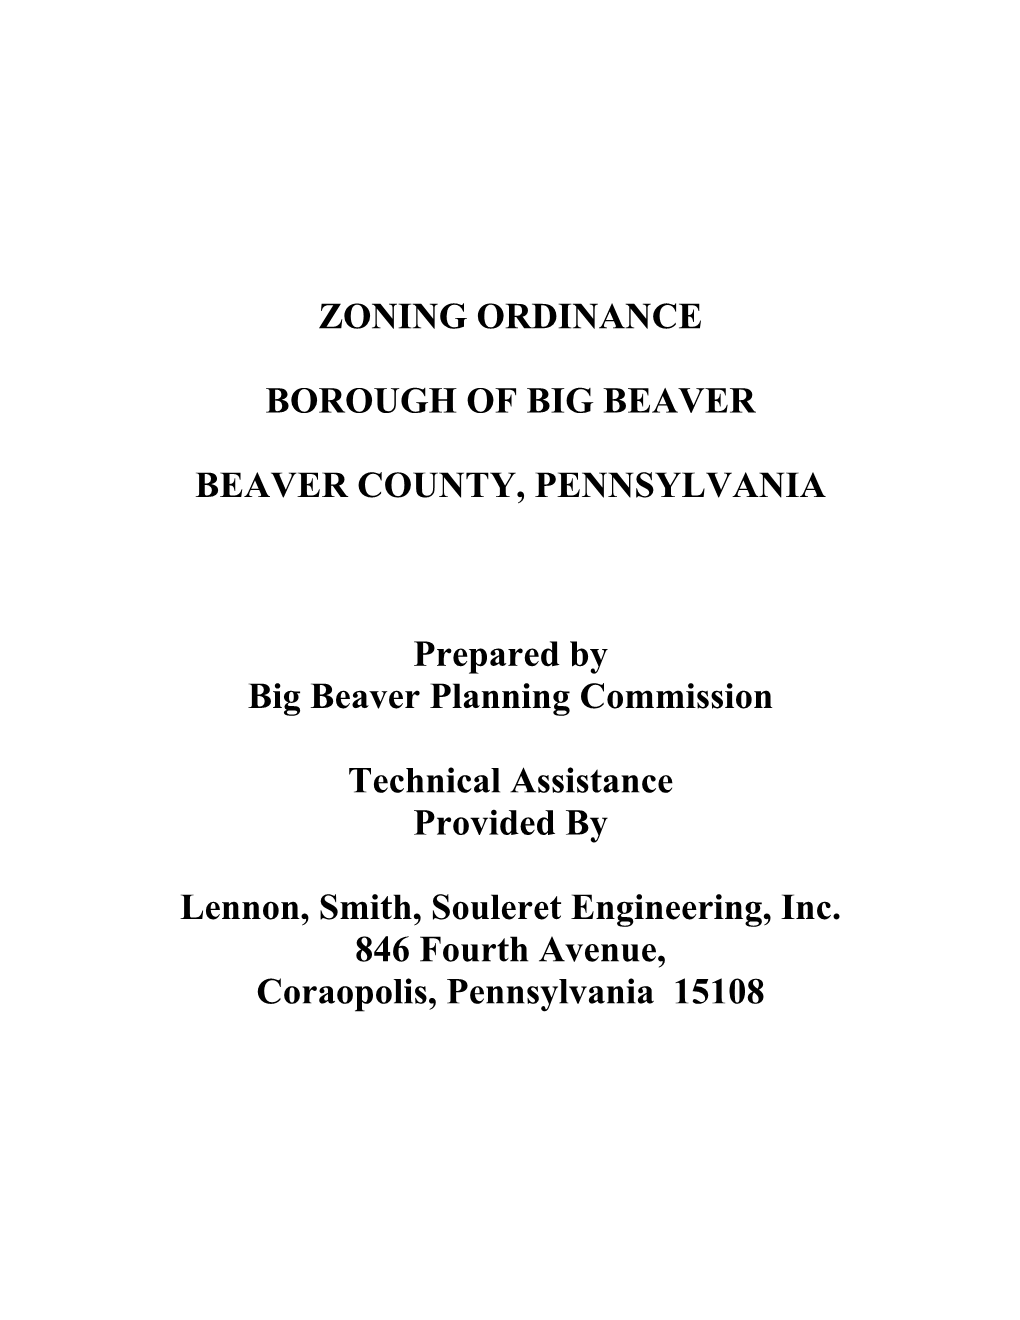 Zoning Ordinance Borough of Big Beaver Beaver County